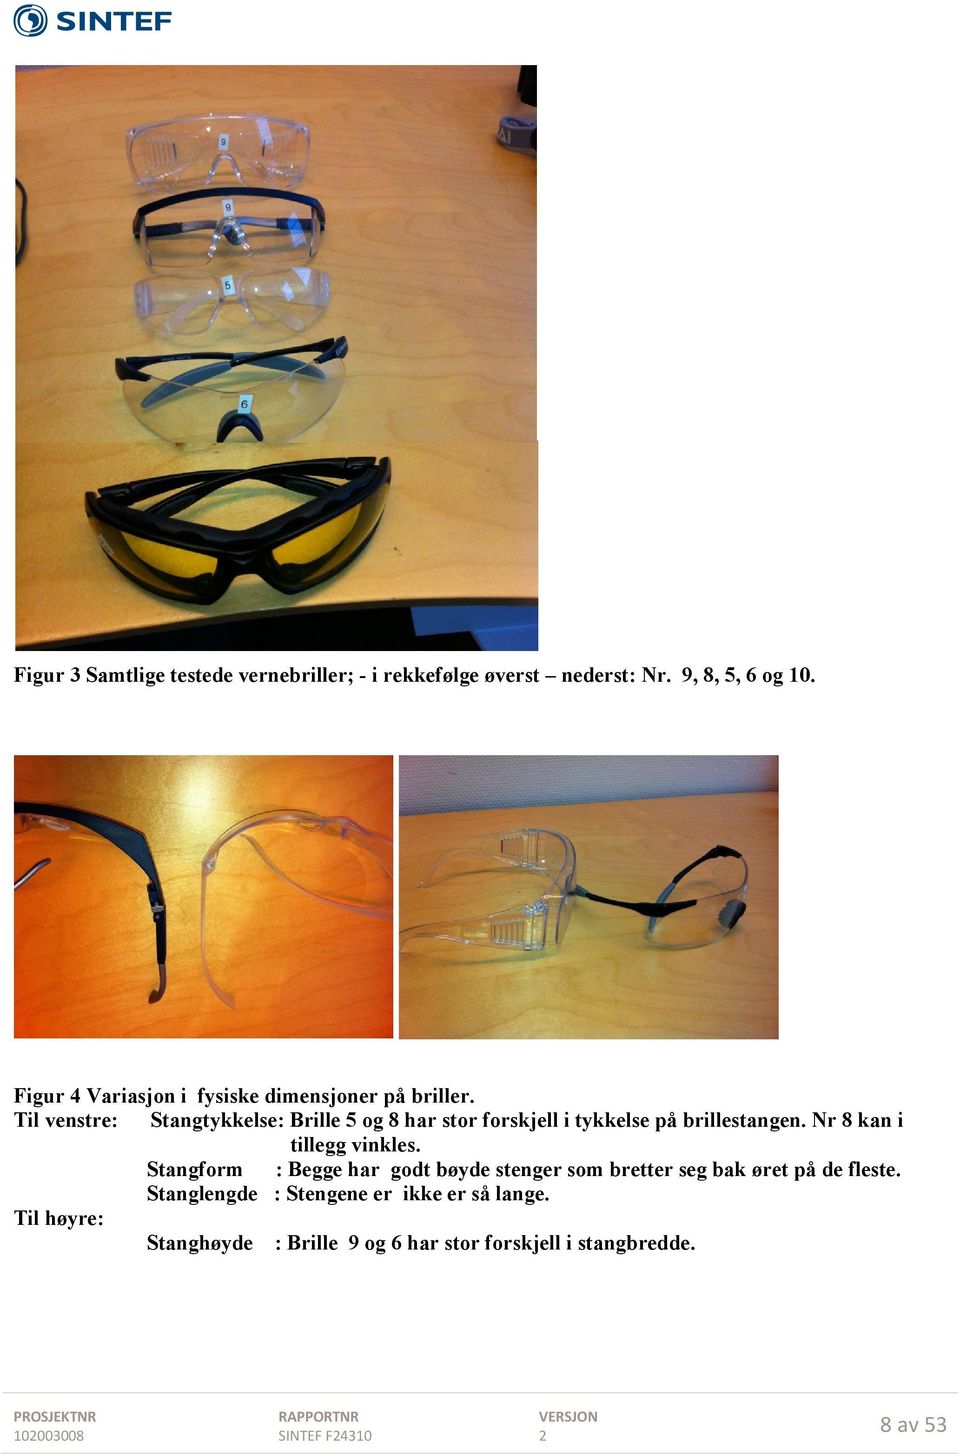 Til venstre: Stangtykkelse: Brille 5 og 8 har stor forskjell i tykkelse på brillestangen. Nr 8 kan i tillegg vinkles.